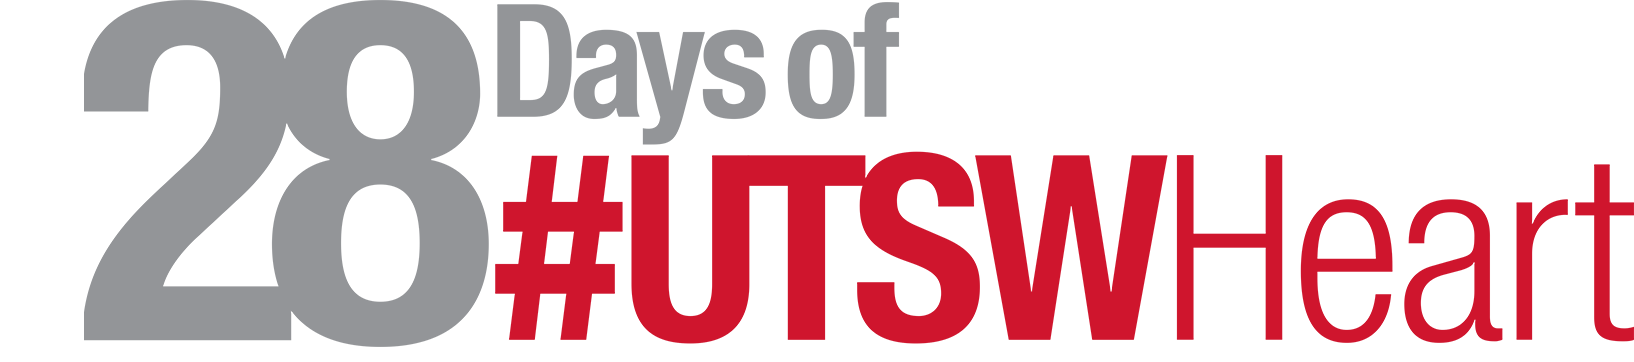 28 Days of #UTSWHeart